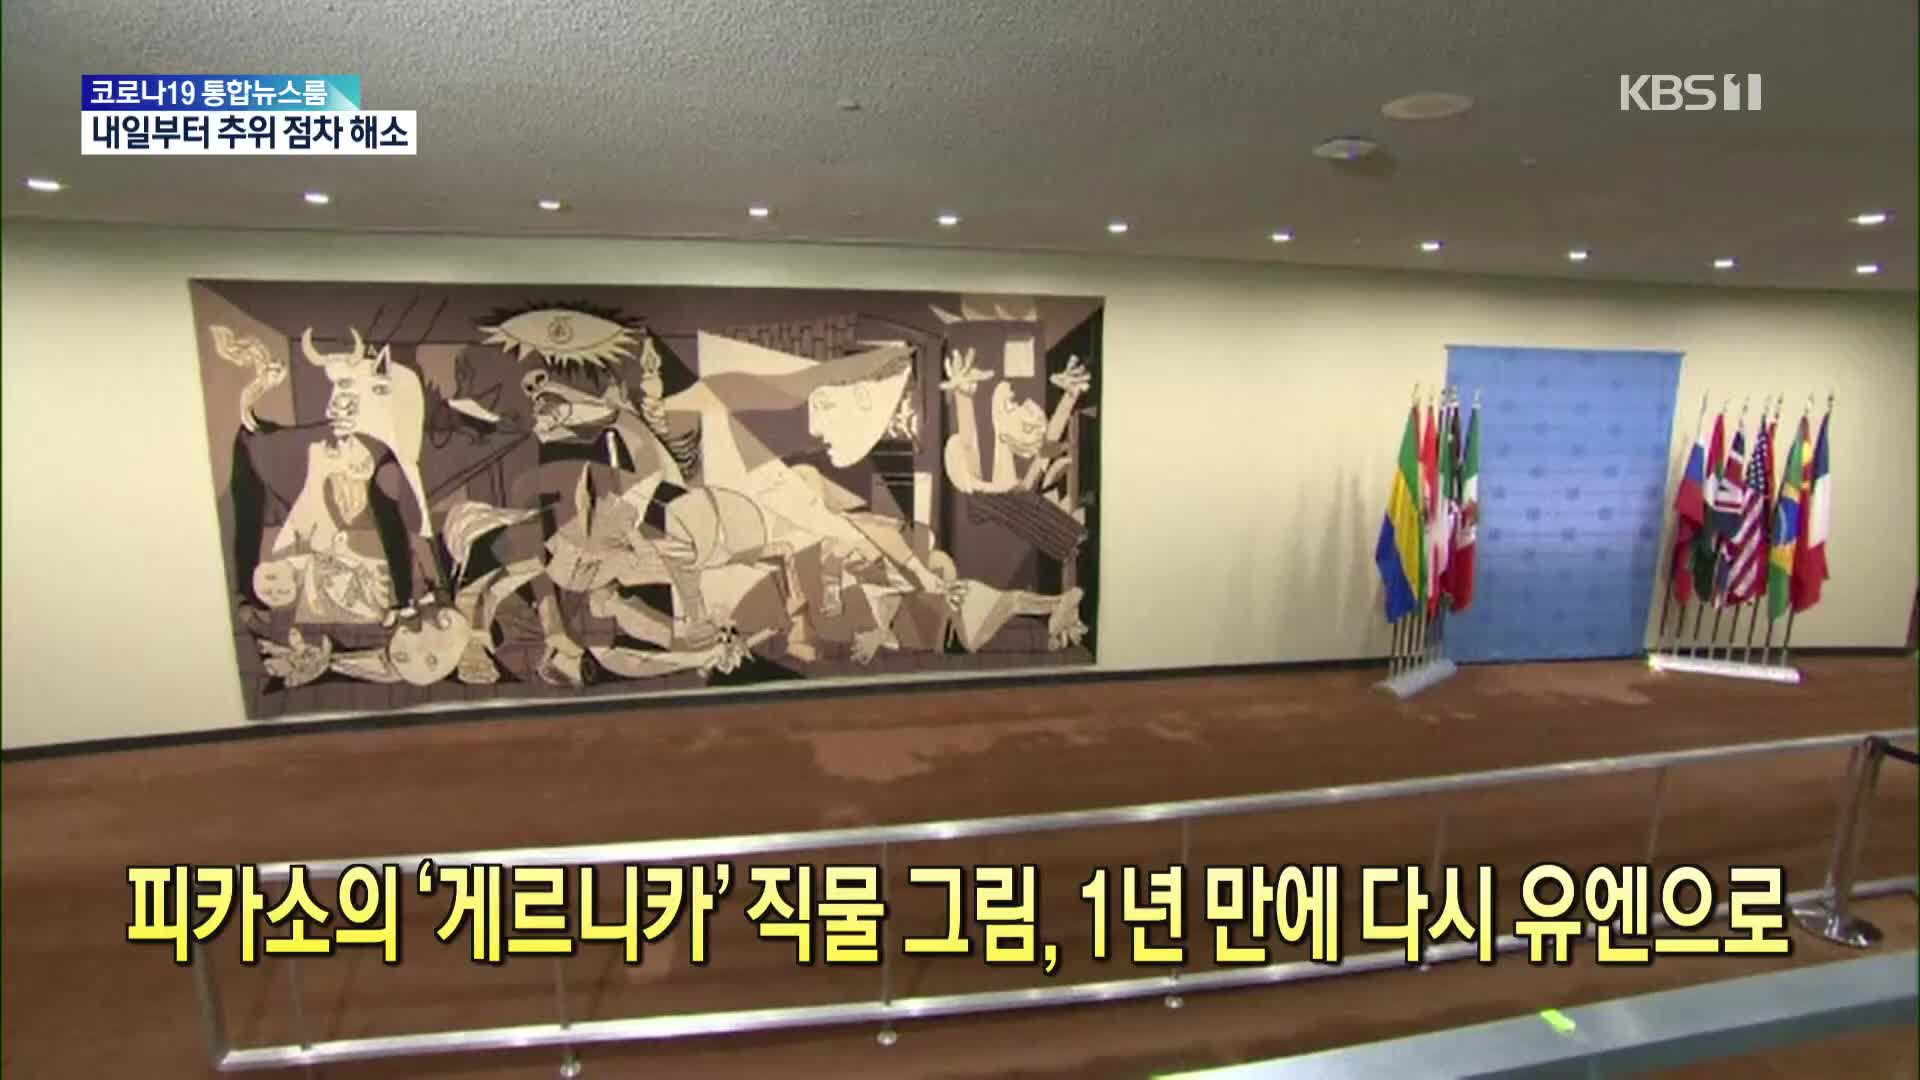 [톡톡 지구촌] 피카소의 ‘게르니카’ 직물 그림, 1년 만에 다시 유엔으로